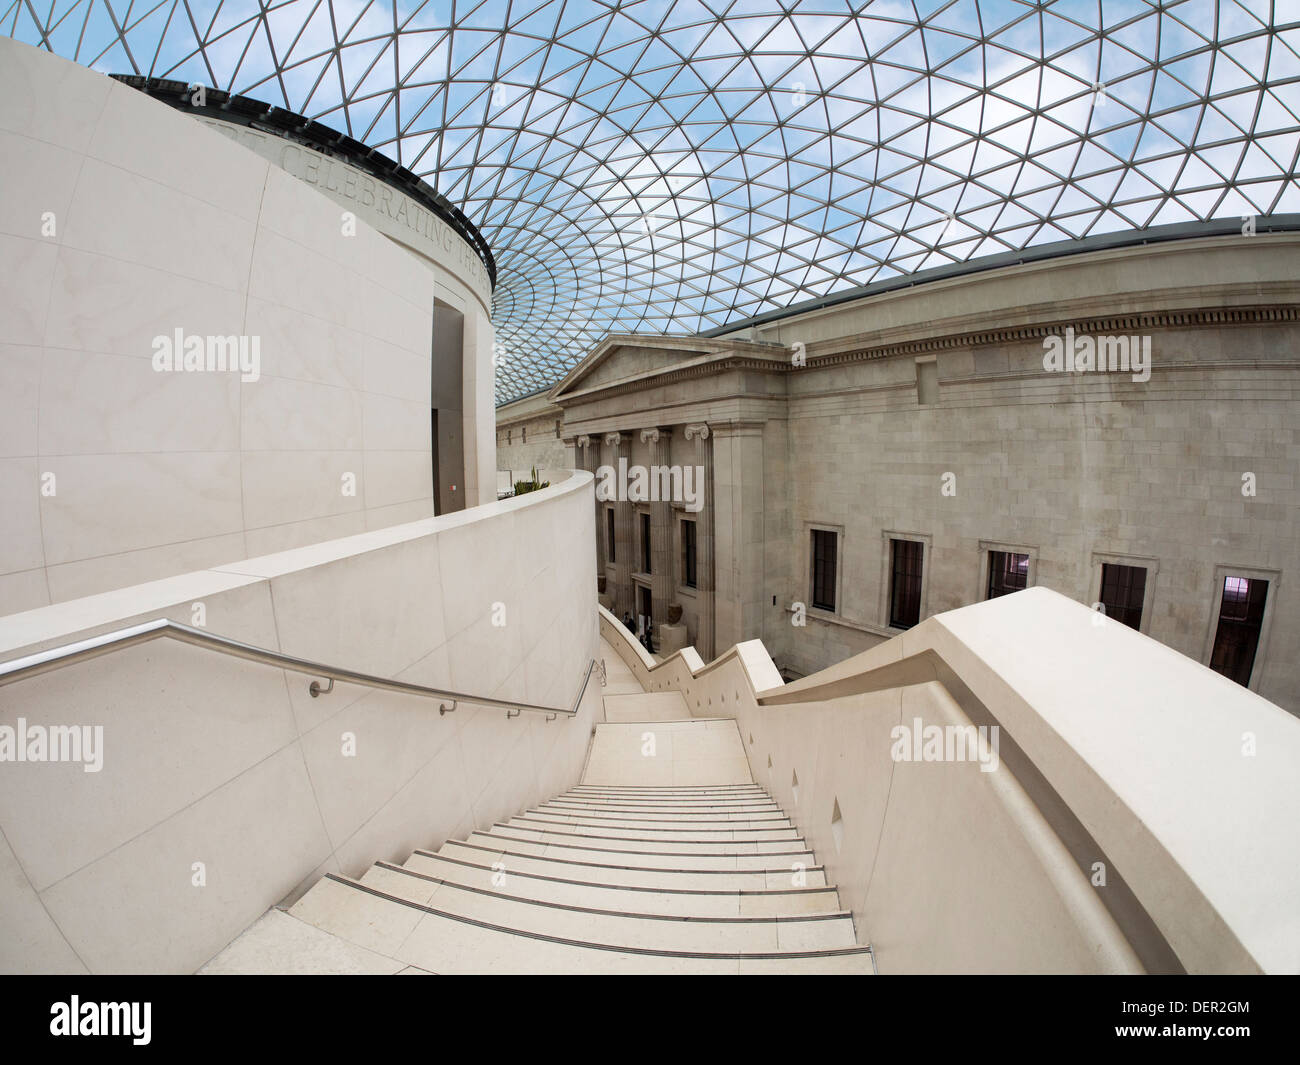 The British Museum - Queen Elizabeth II Great Court 4 Stock Photo